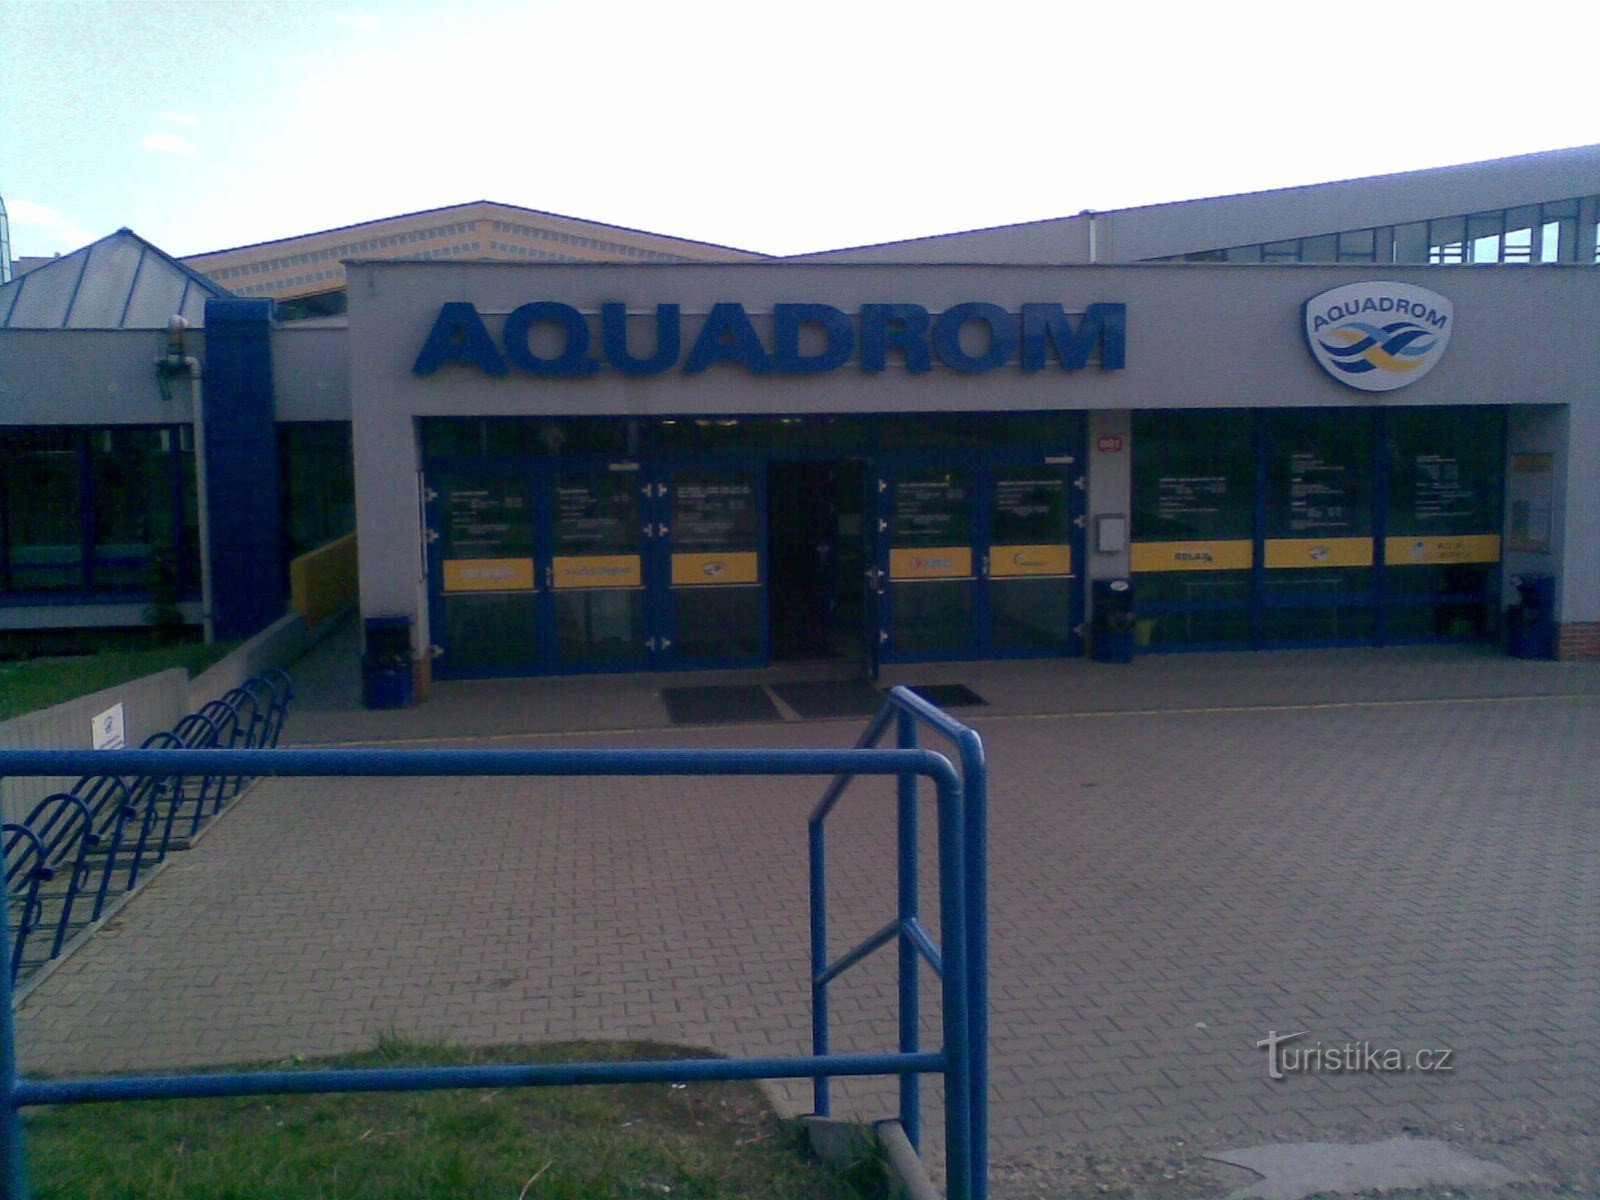 Aquadroom